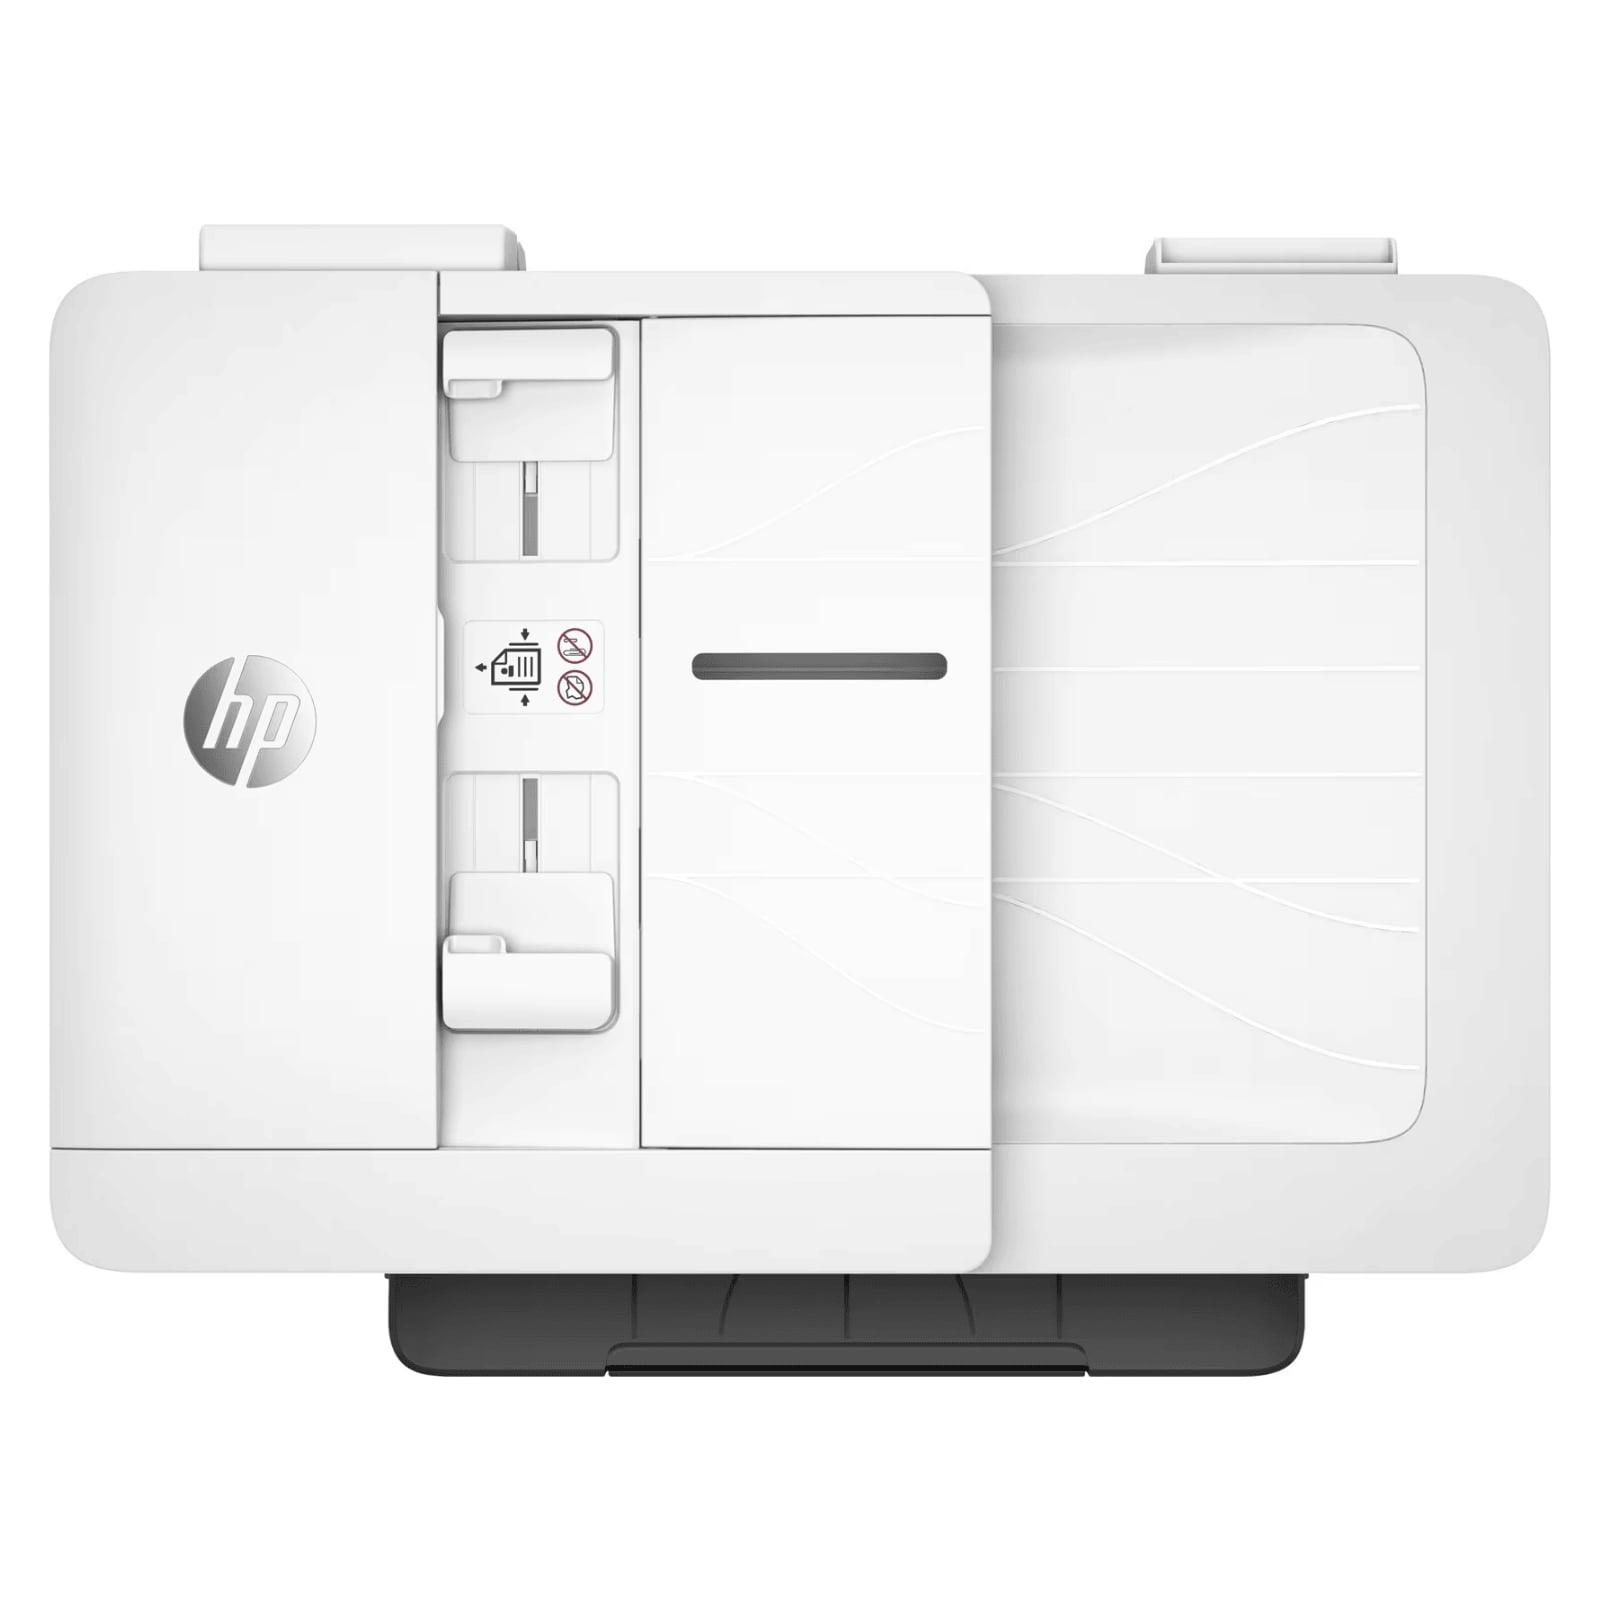 imprimante HP Officejet PRO 7740 AIO blanc